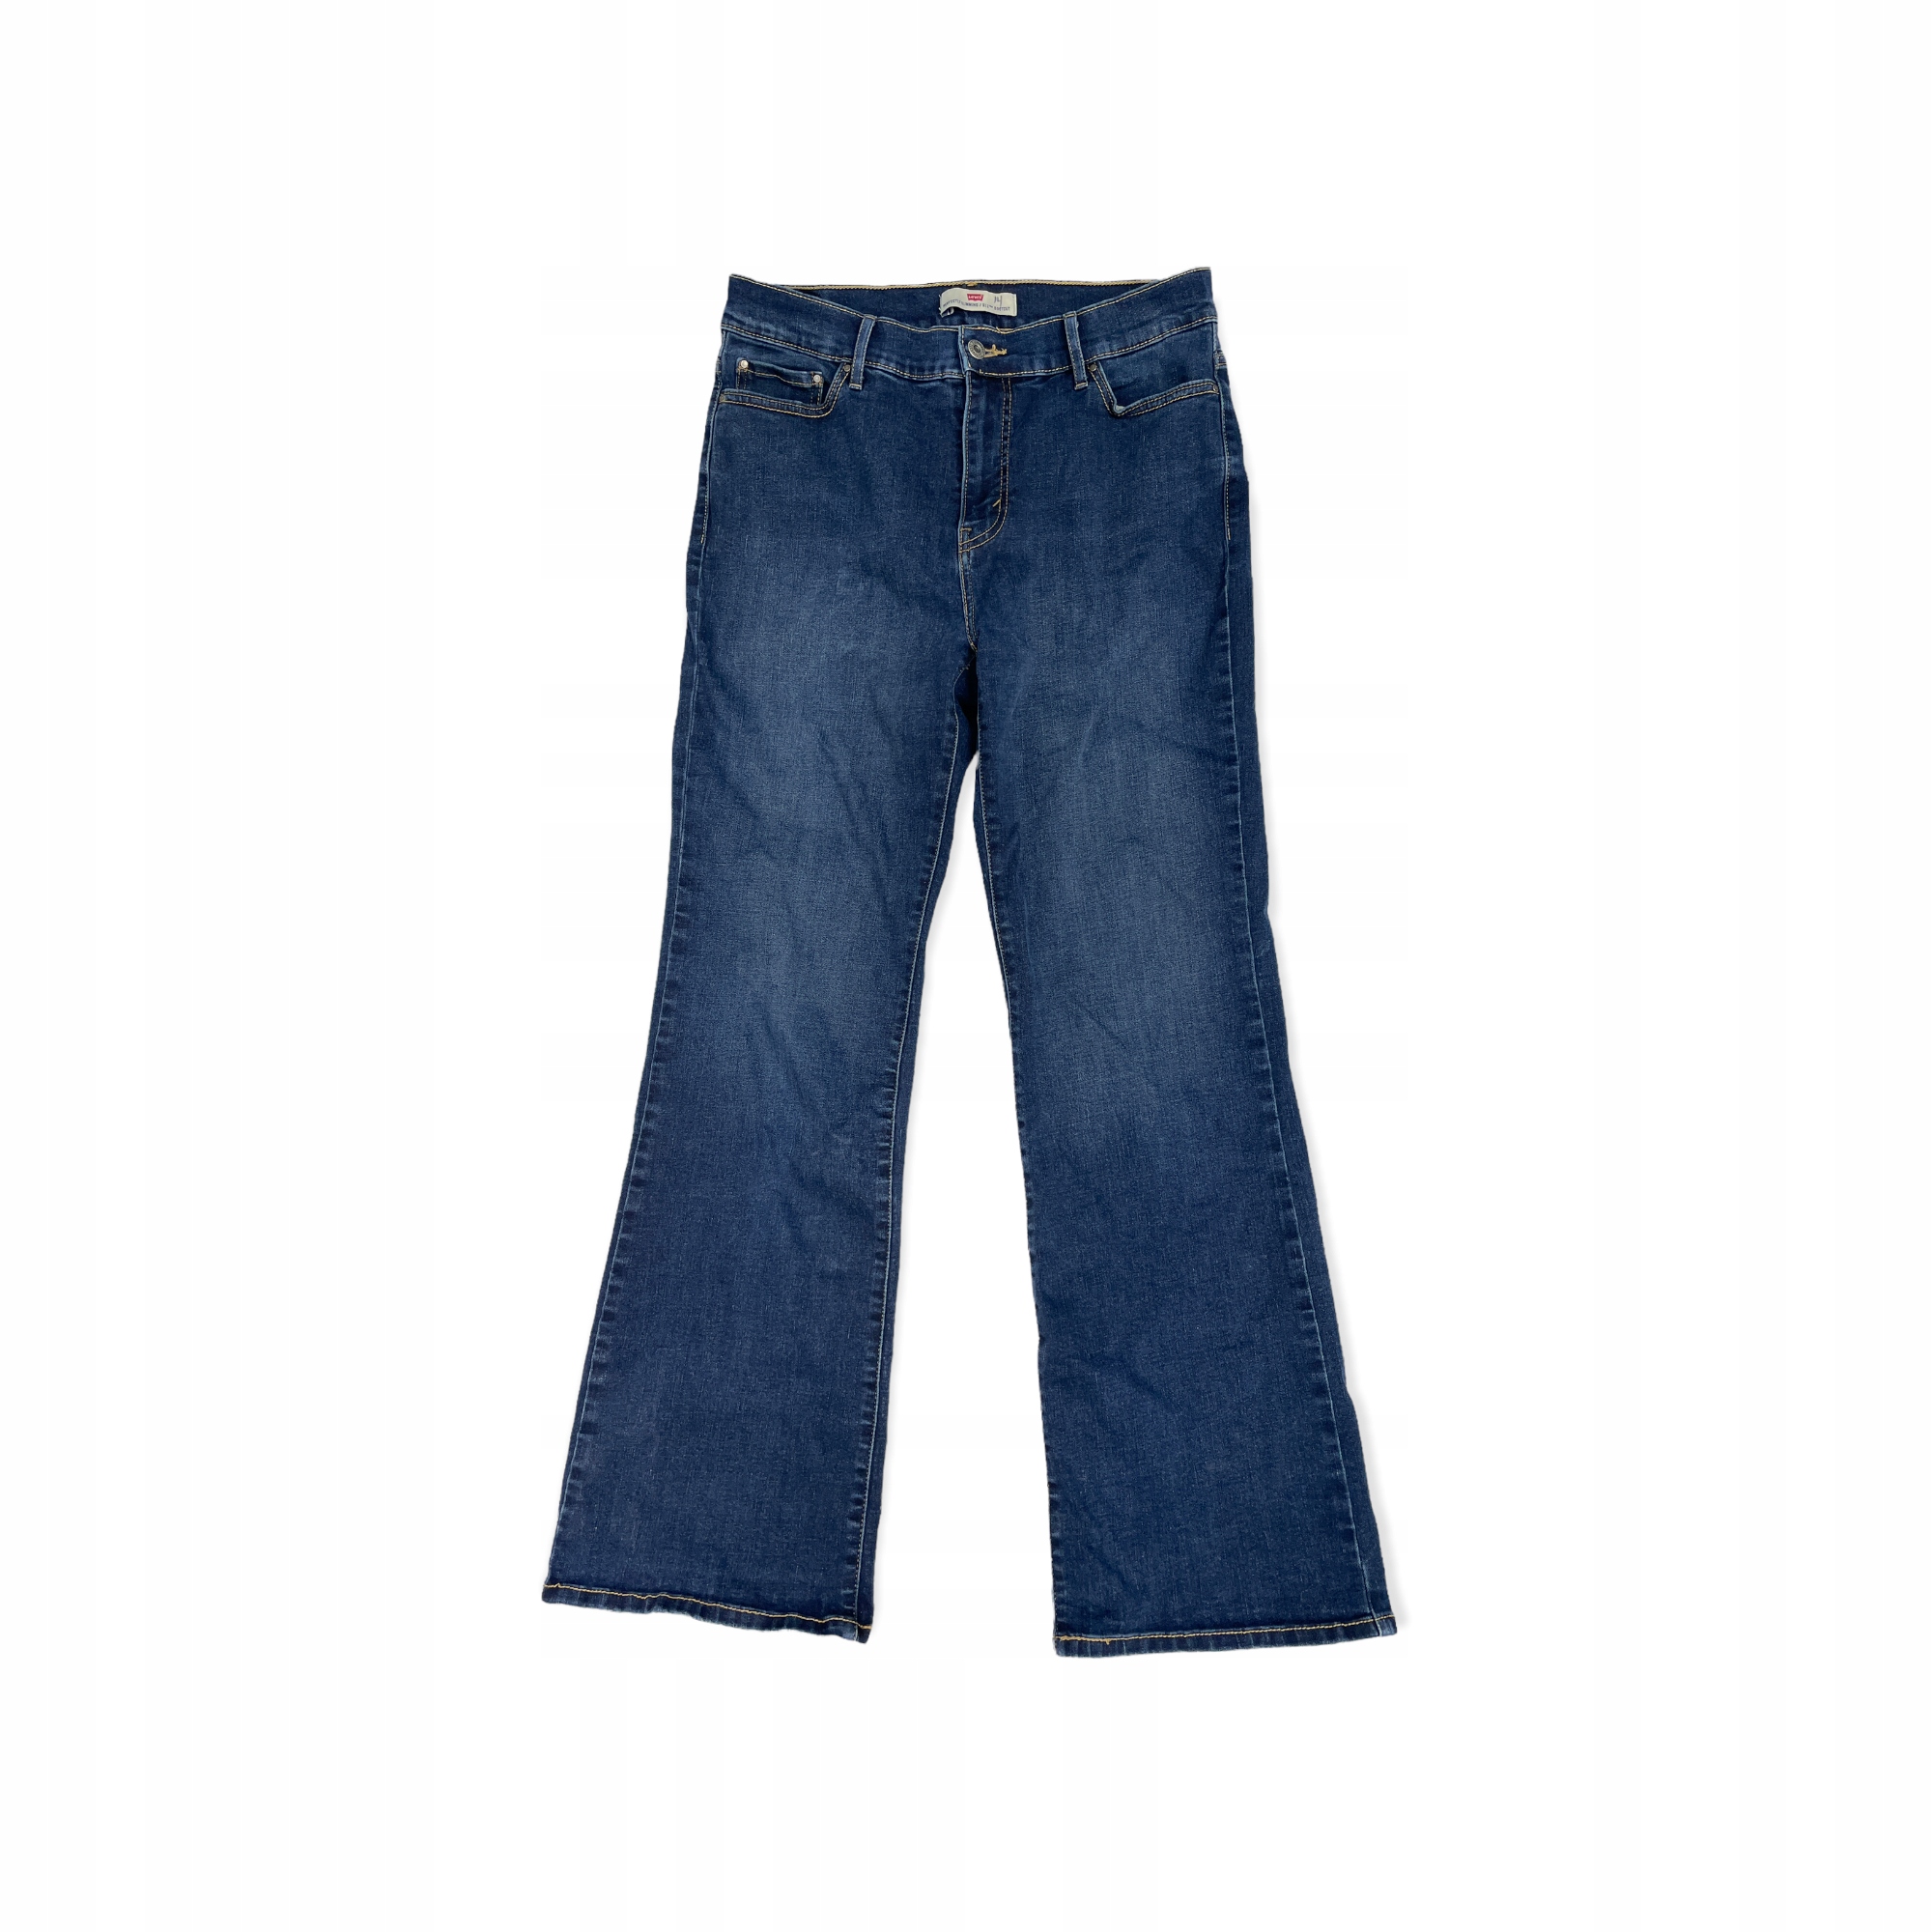 Dámske džínsové nohavice LEVI'S SLIMMING 512 L/XL